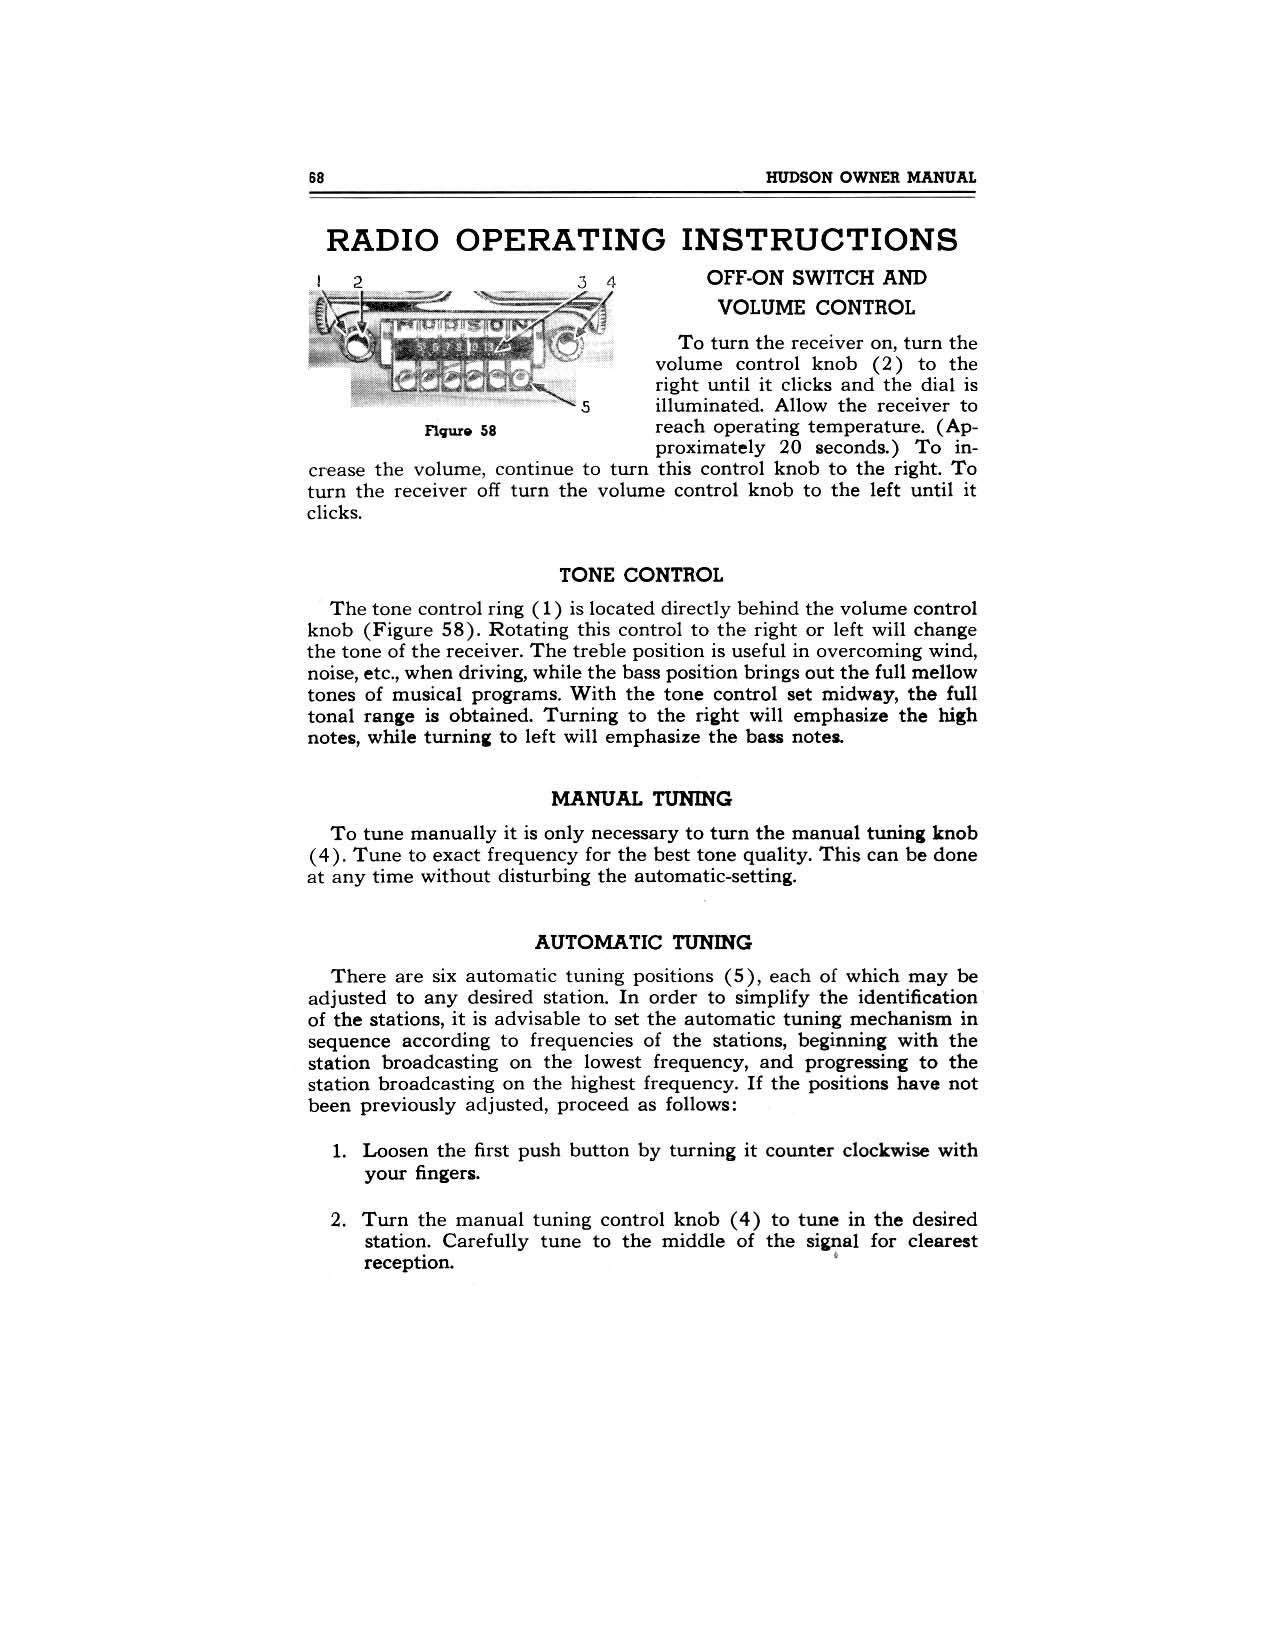 1949 Hudson Owners Manual-70